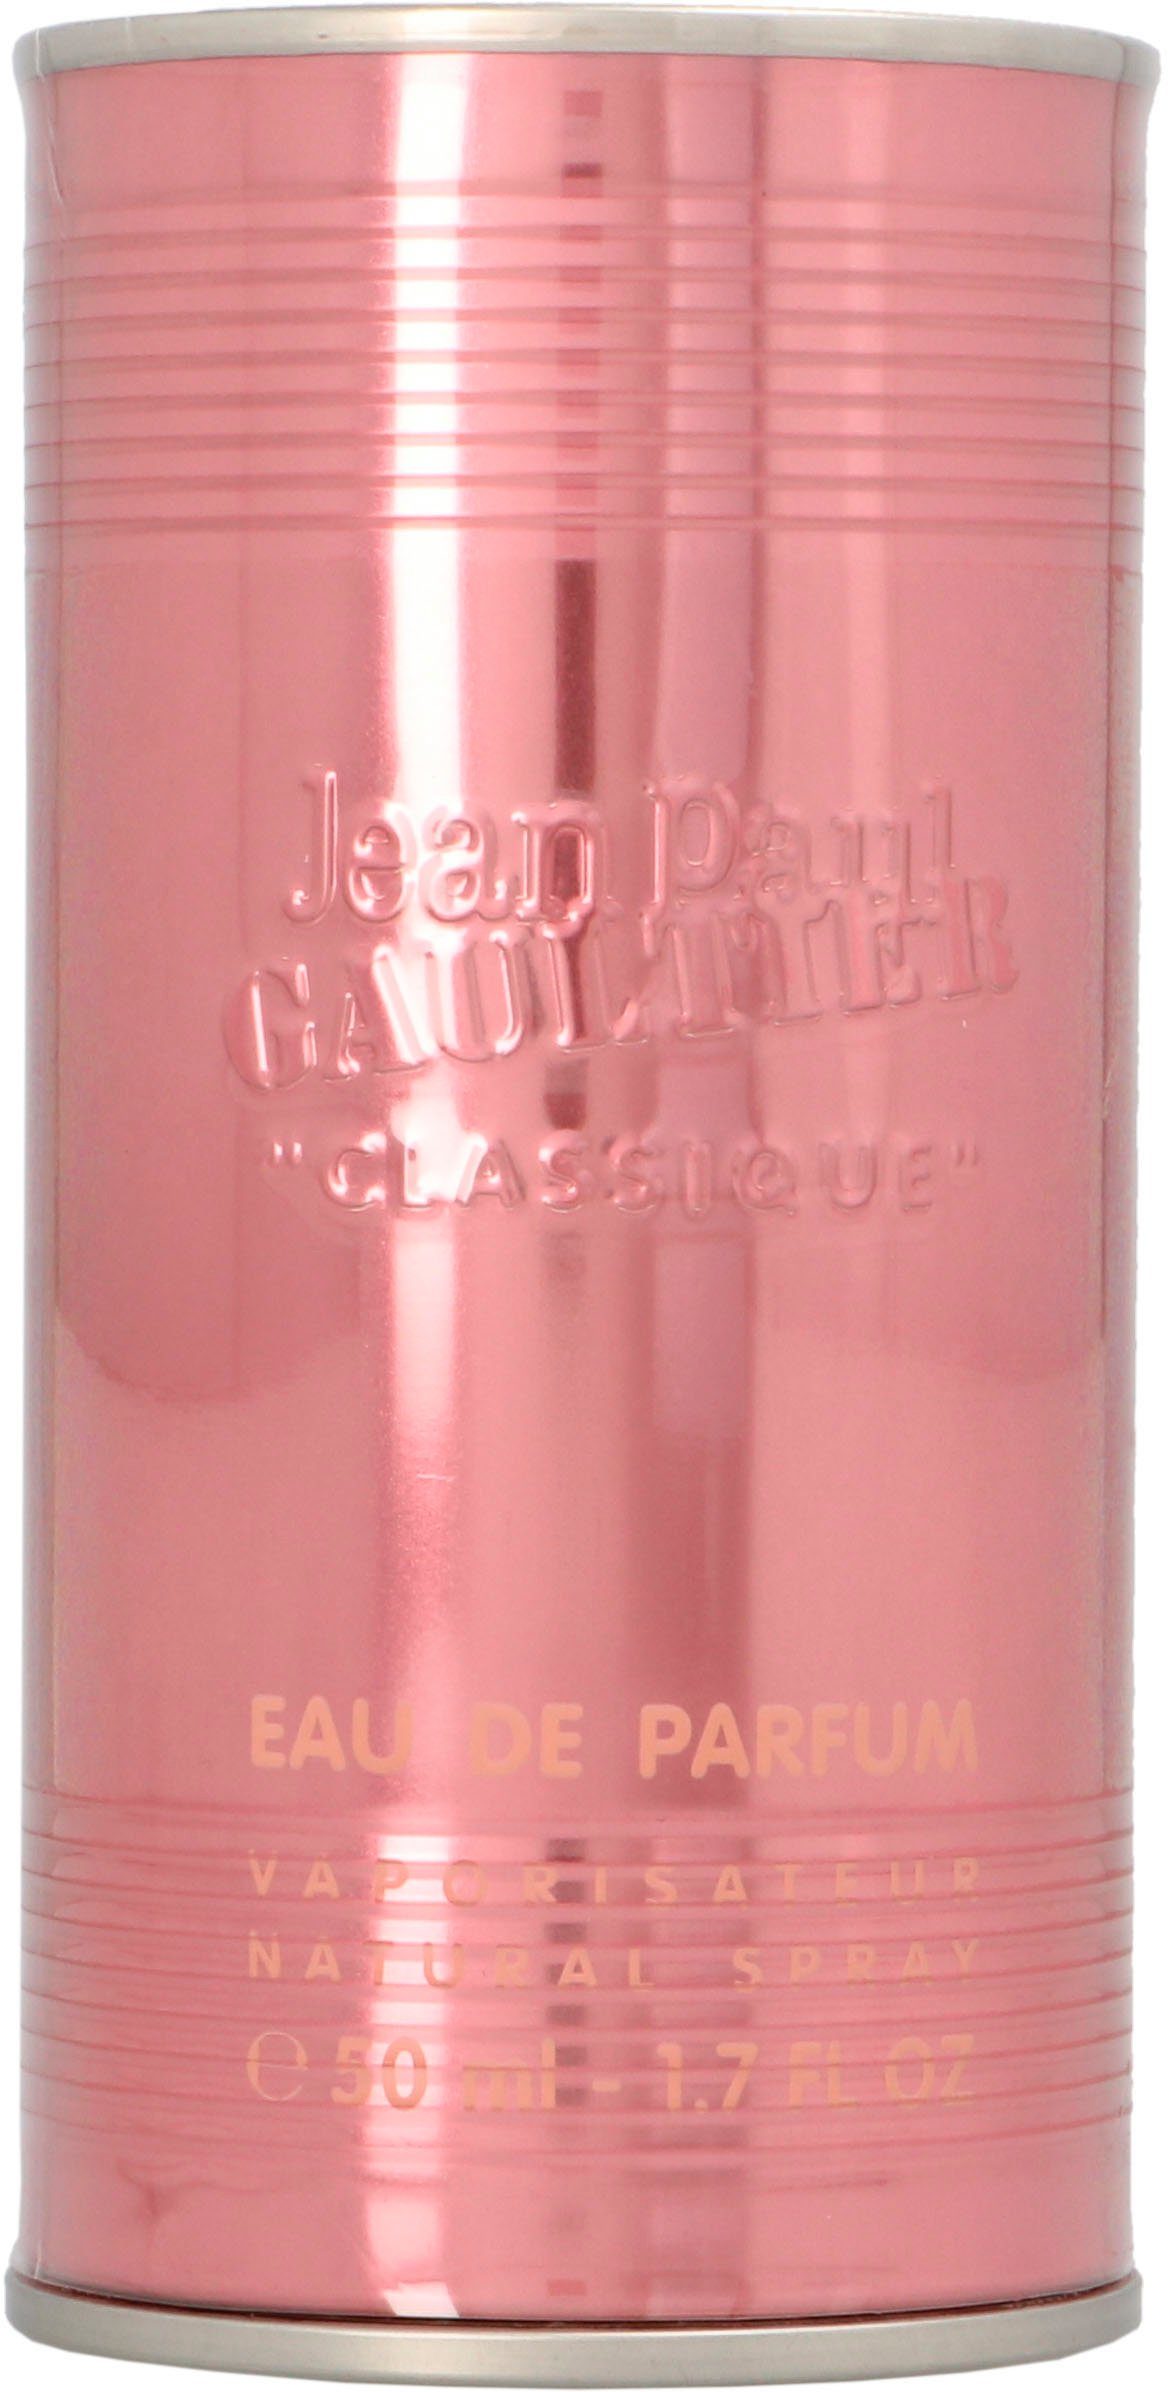 JEAN PAUL GAULTIER Classique Parfum Eau de